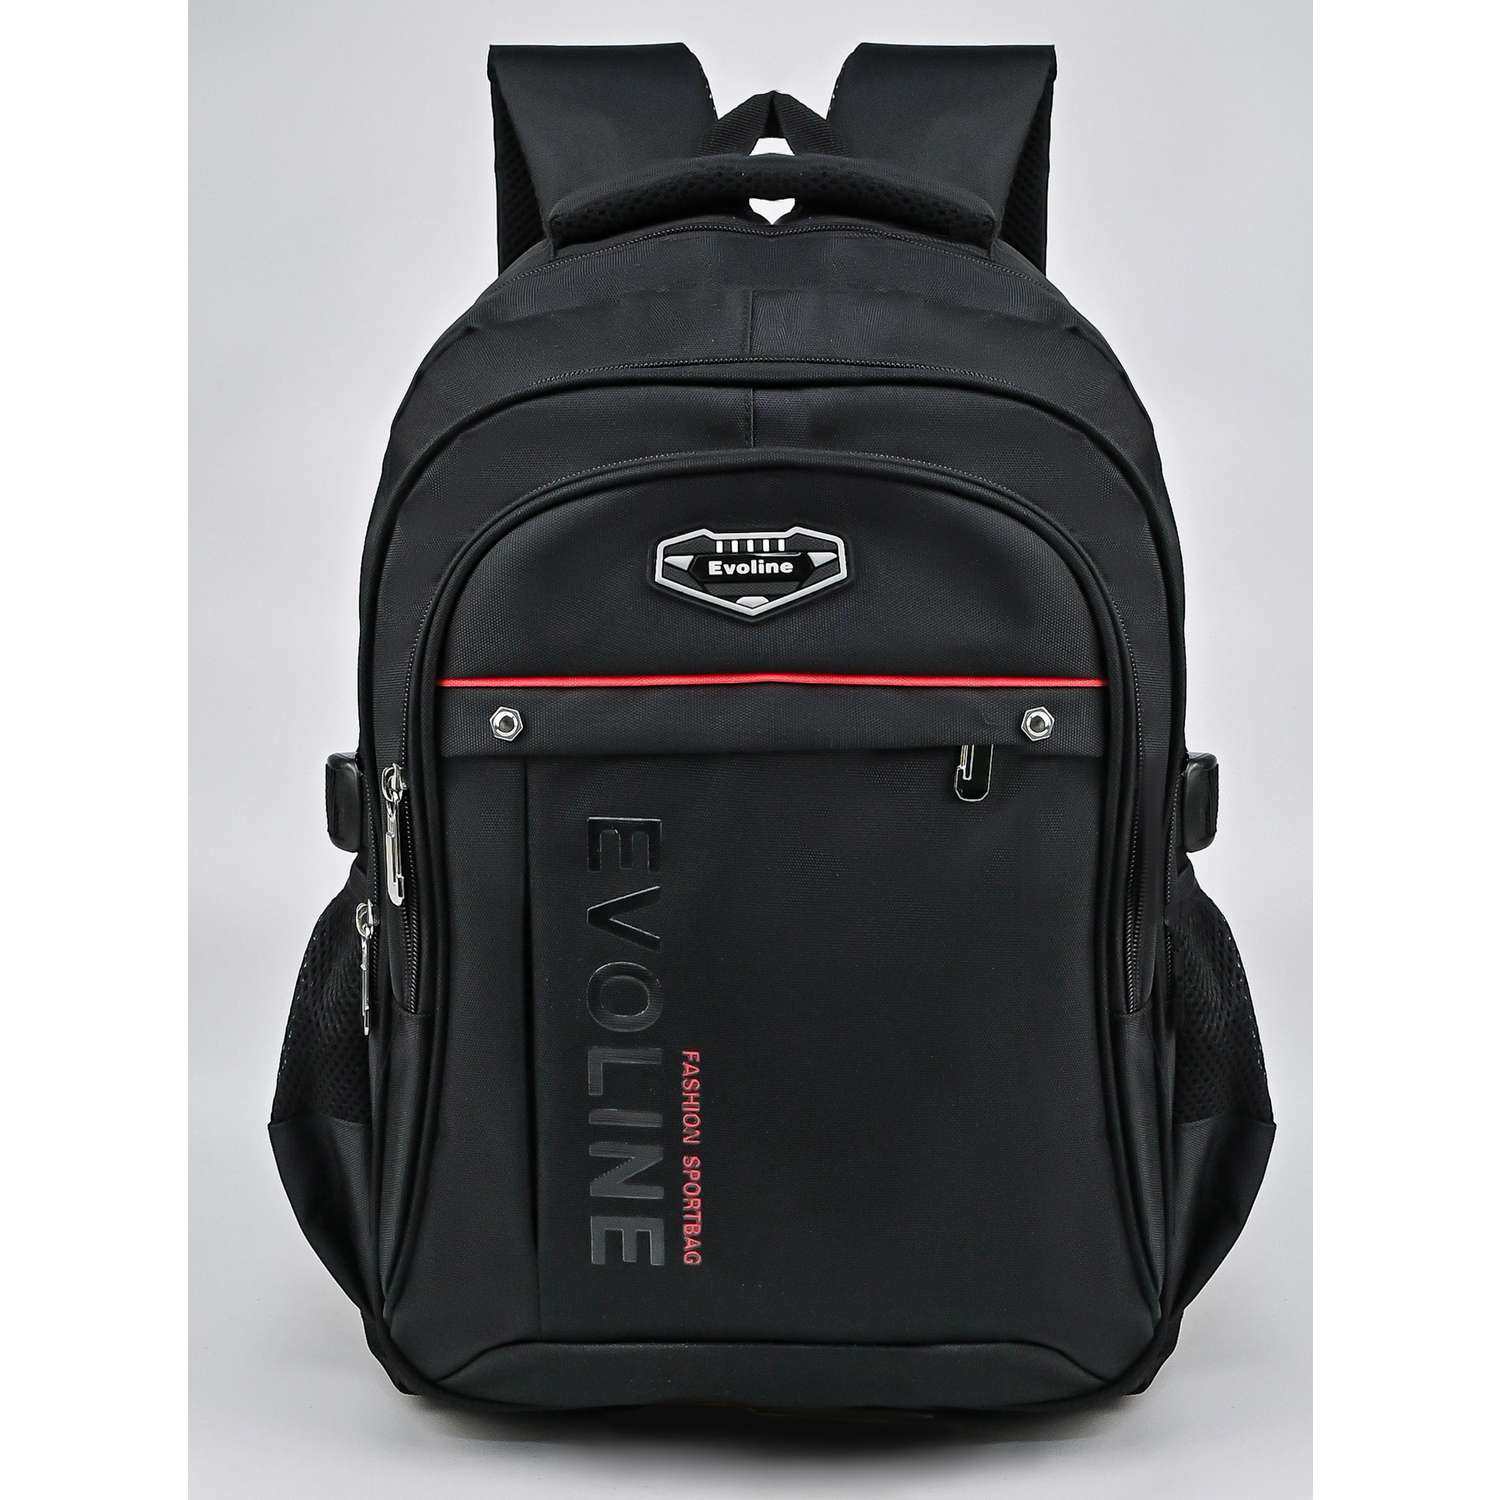 Рюкзак школьный Evoline большой черный с красной полосой EVO-328 - фото 1